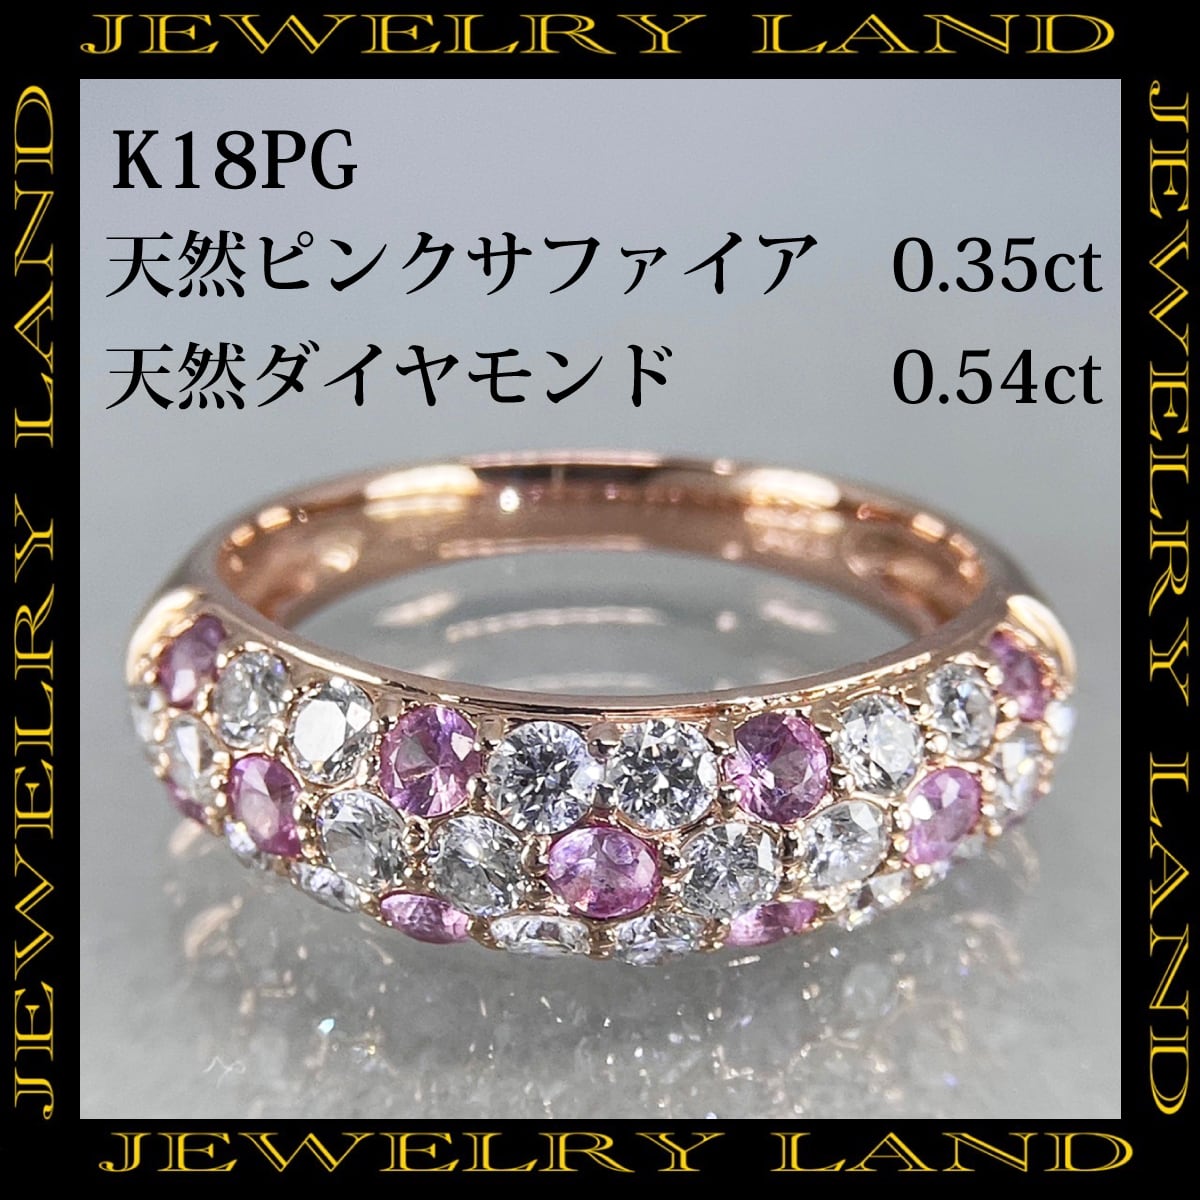 K18PG 天然ピンクサファイア 0.35ct 天然ダイヤモンド 0.54ct